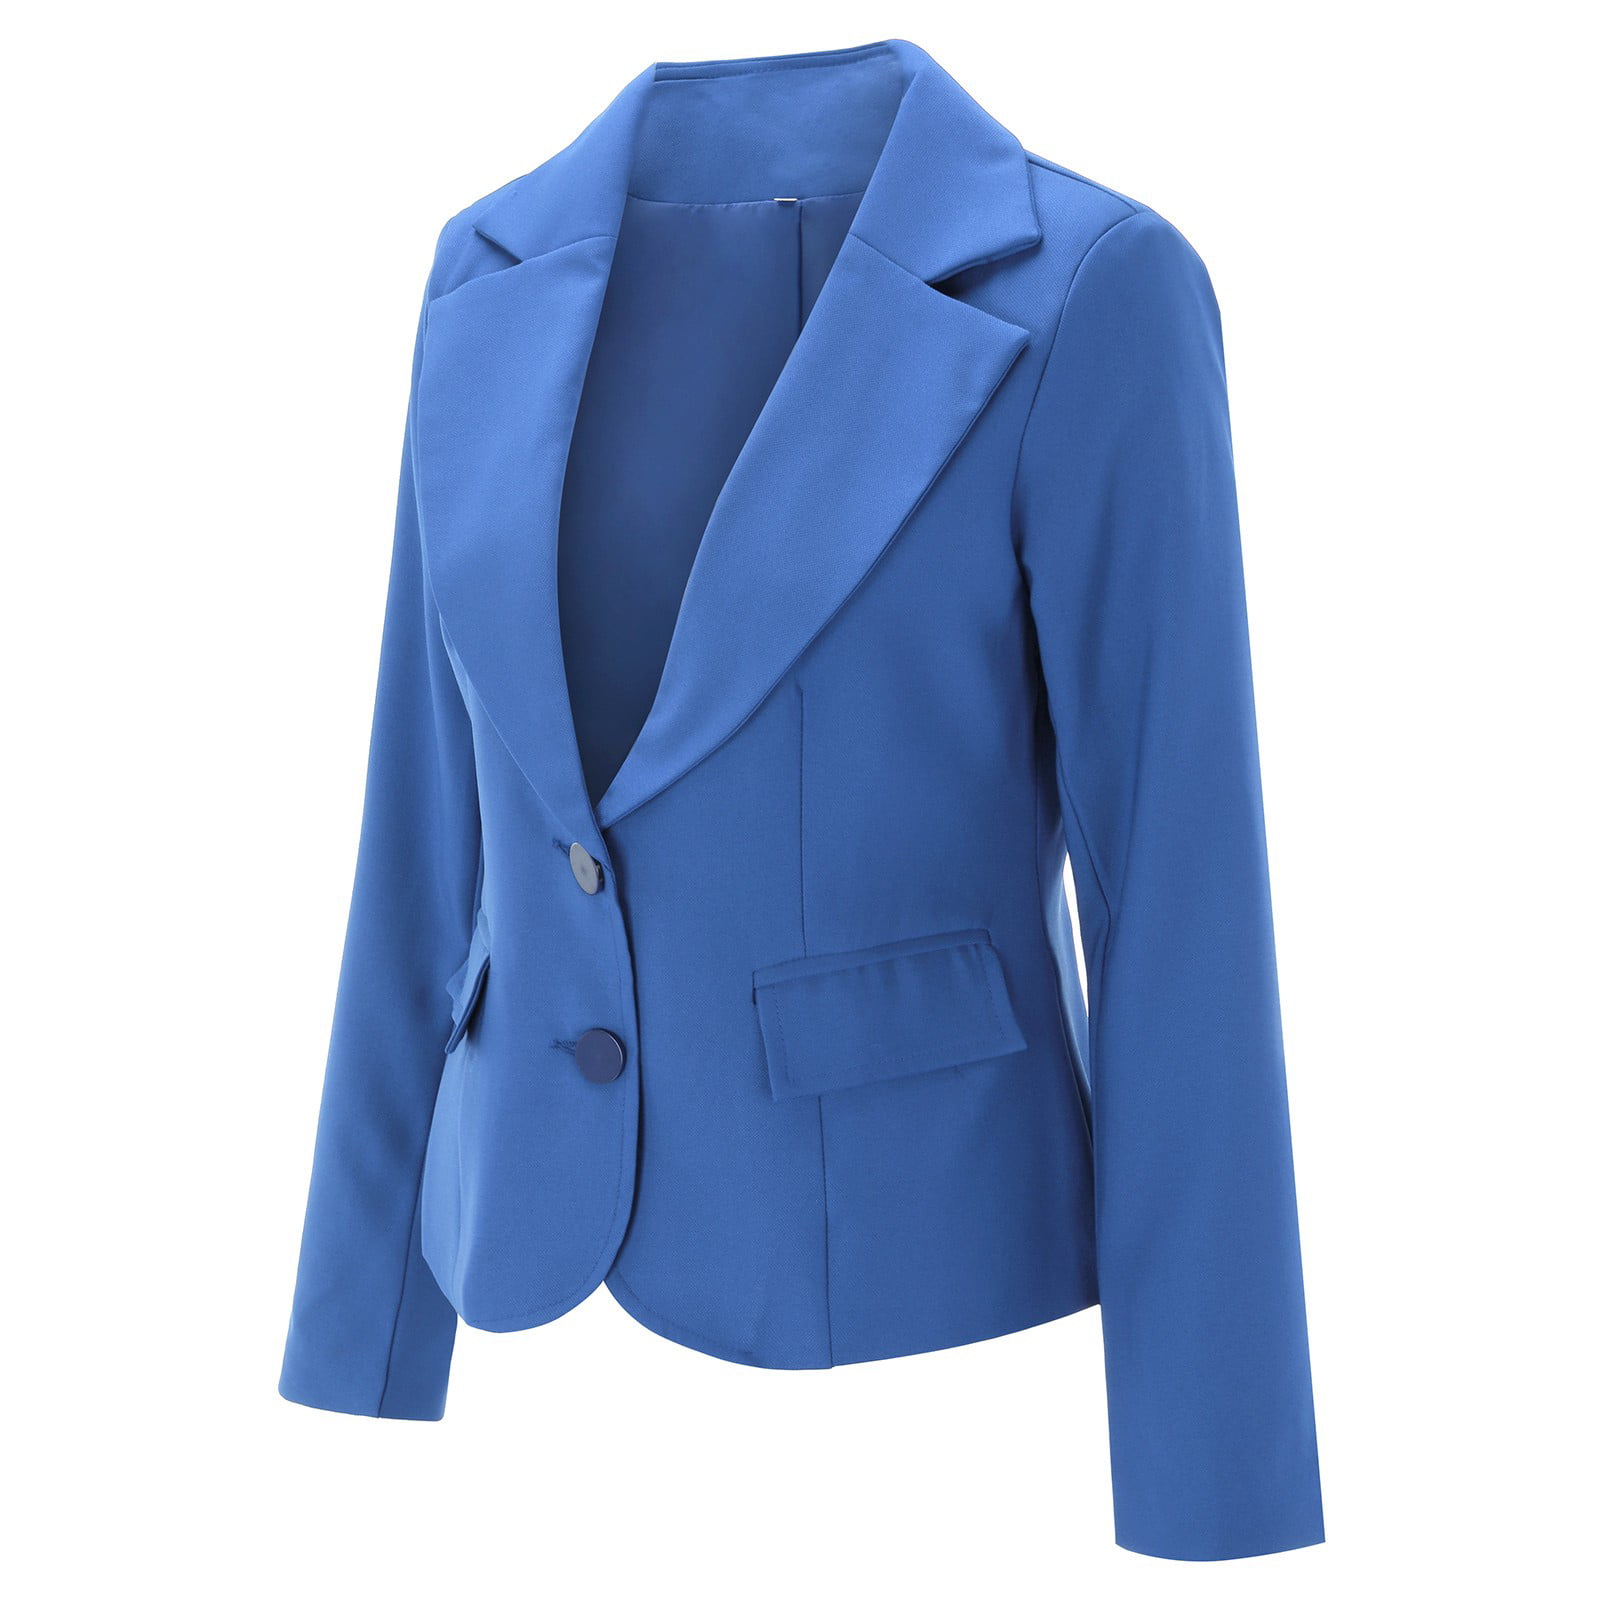 dtydtpe jackets for women blazer jackets for women womens casual